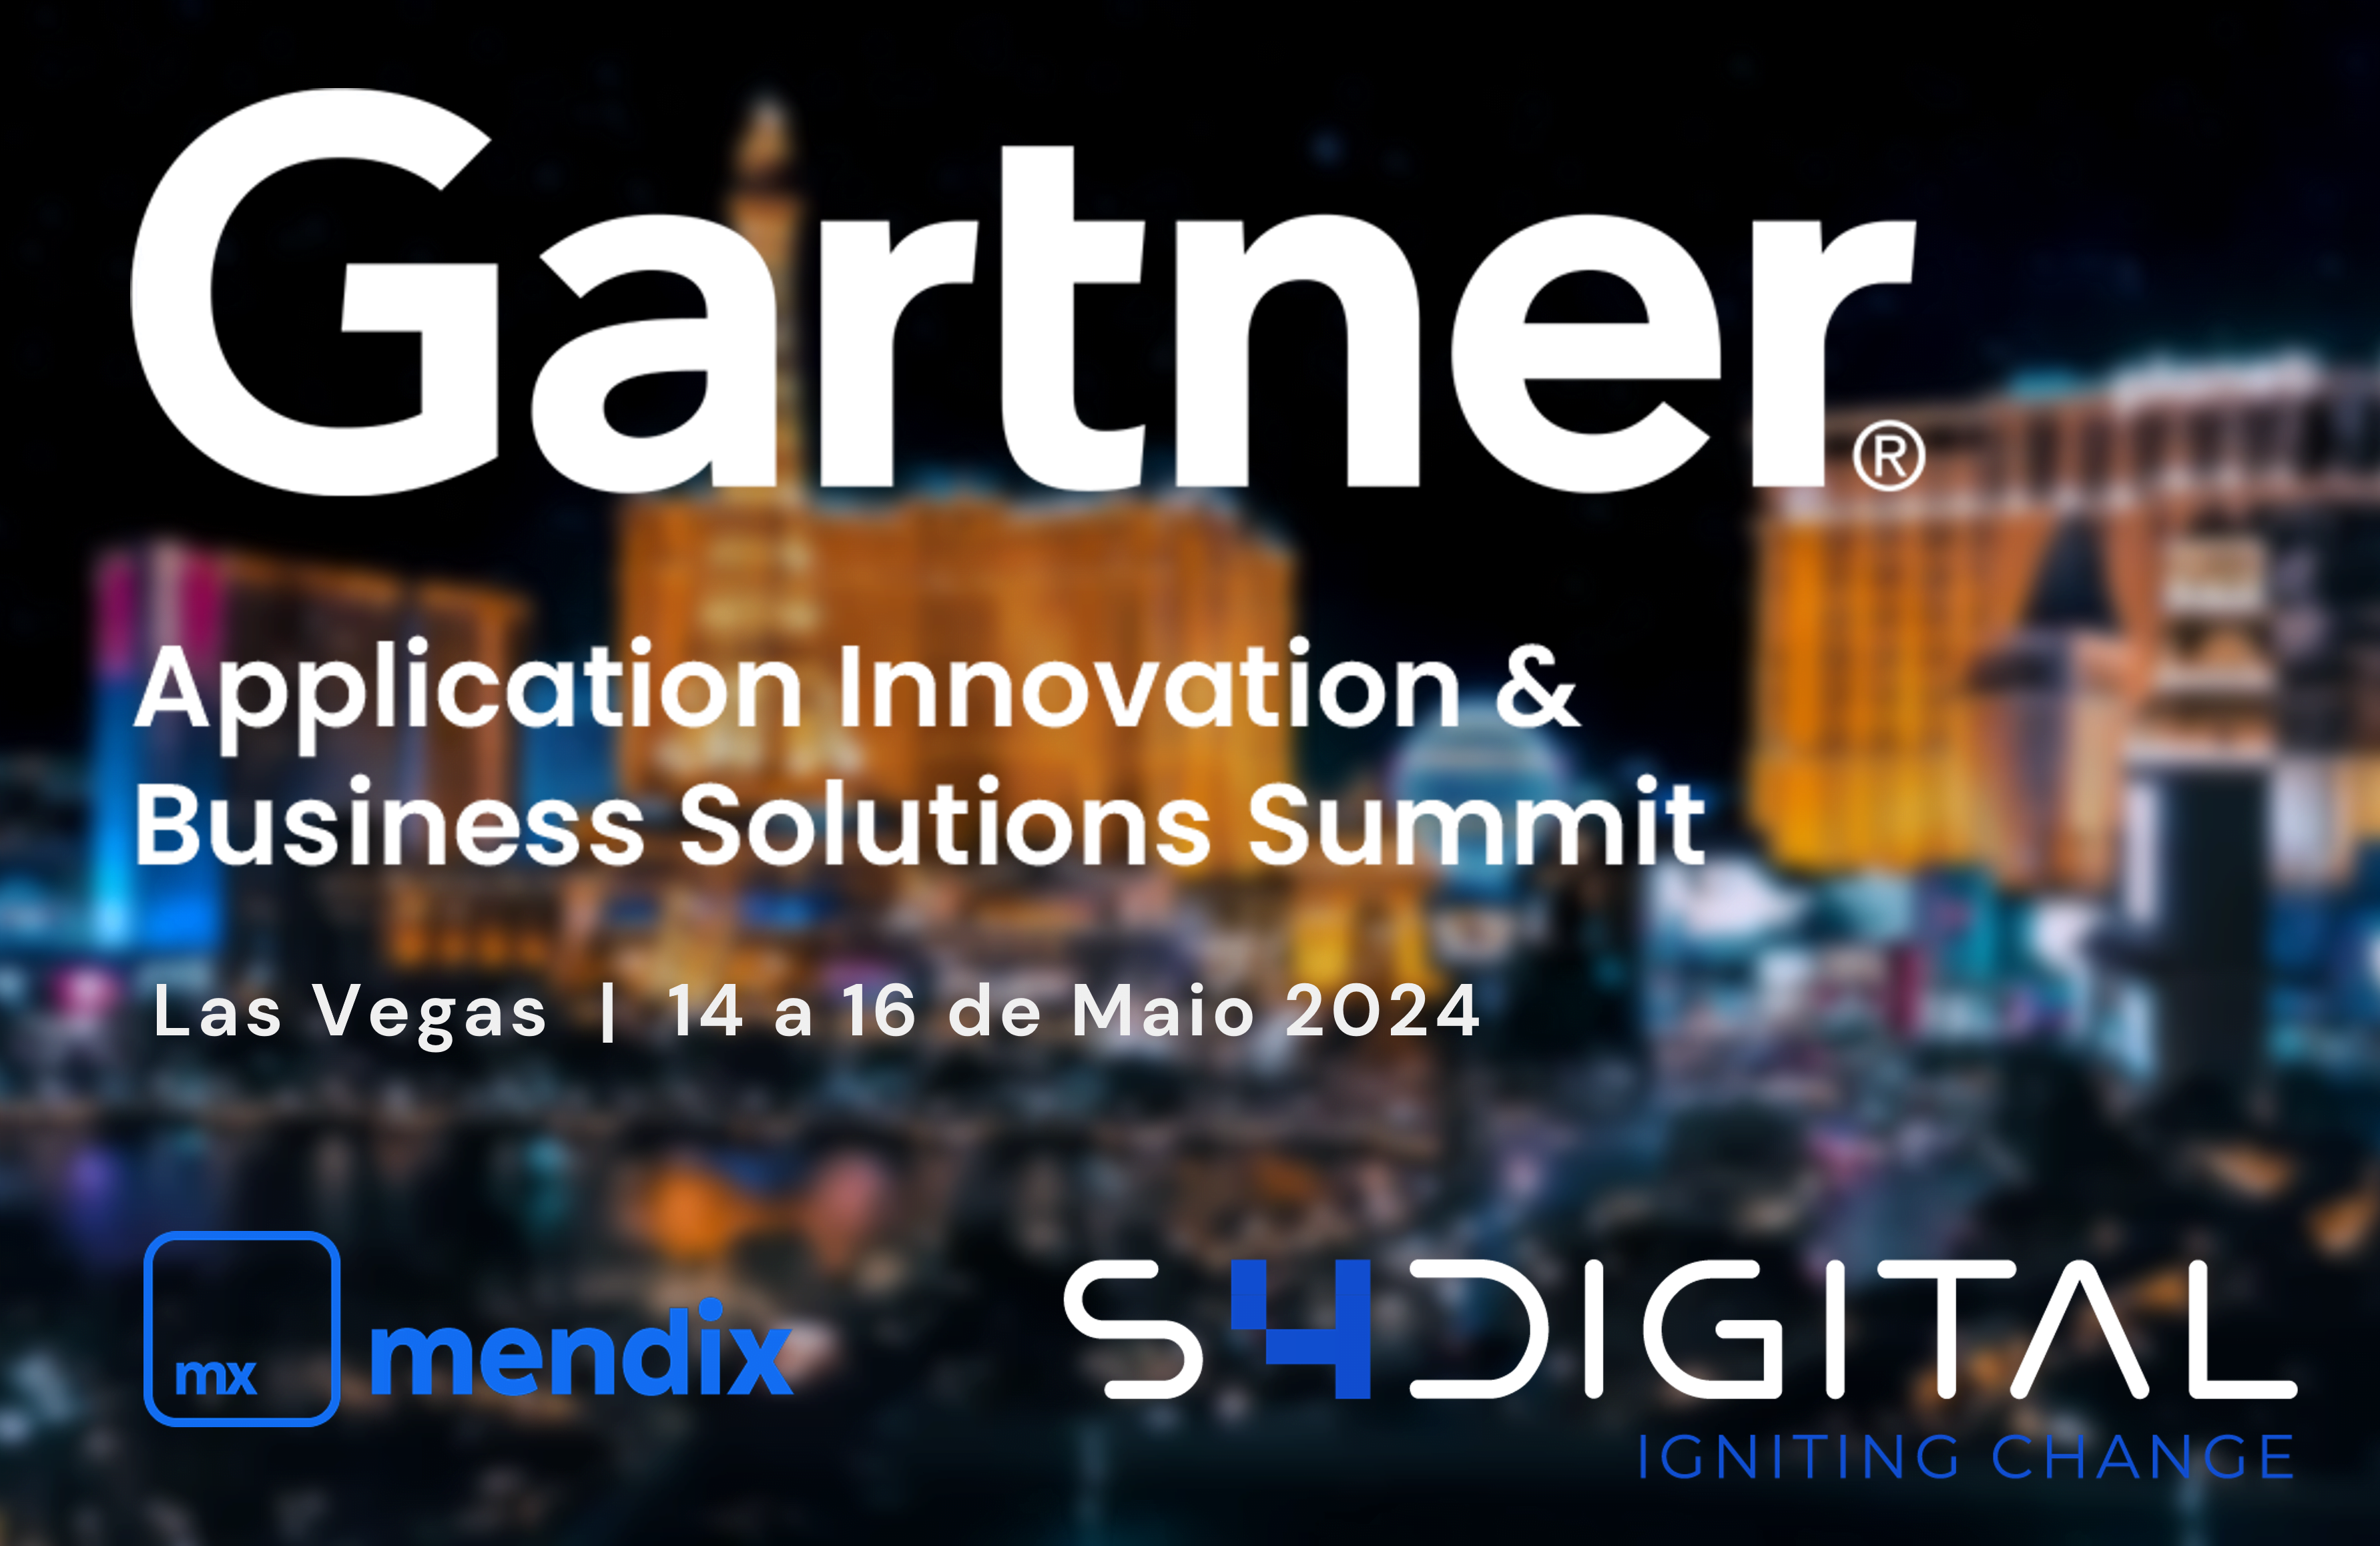 Evento Gartner Application Innovation & Business Solutions Summit 2024